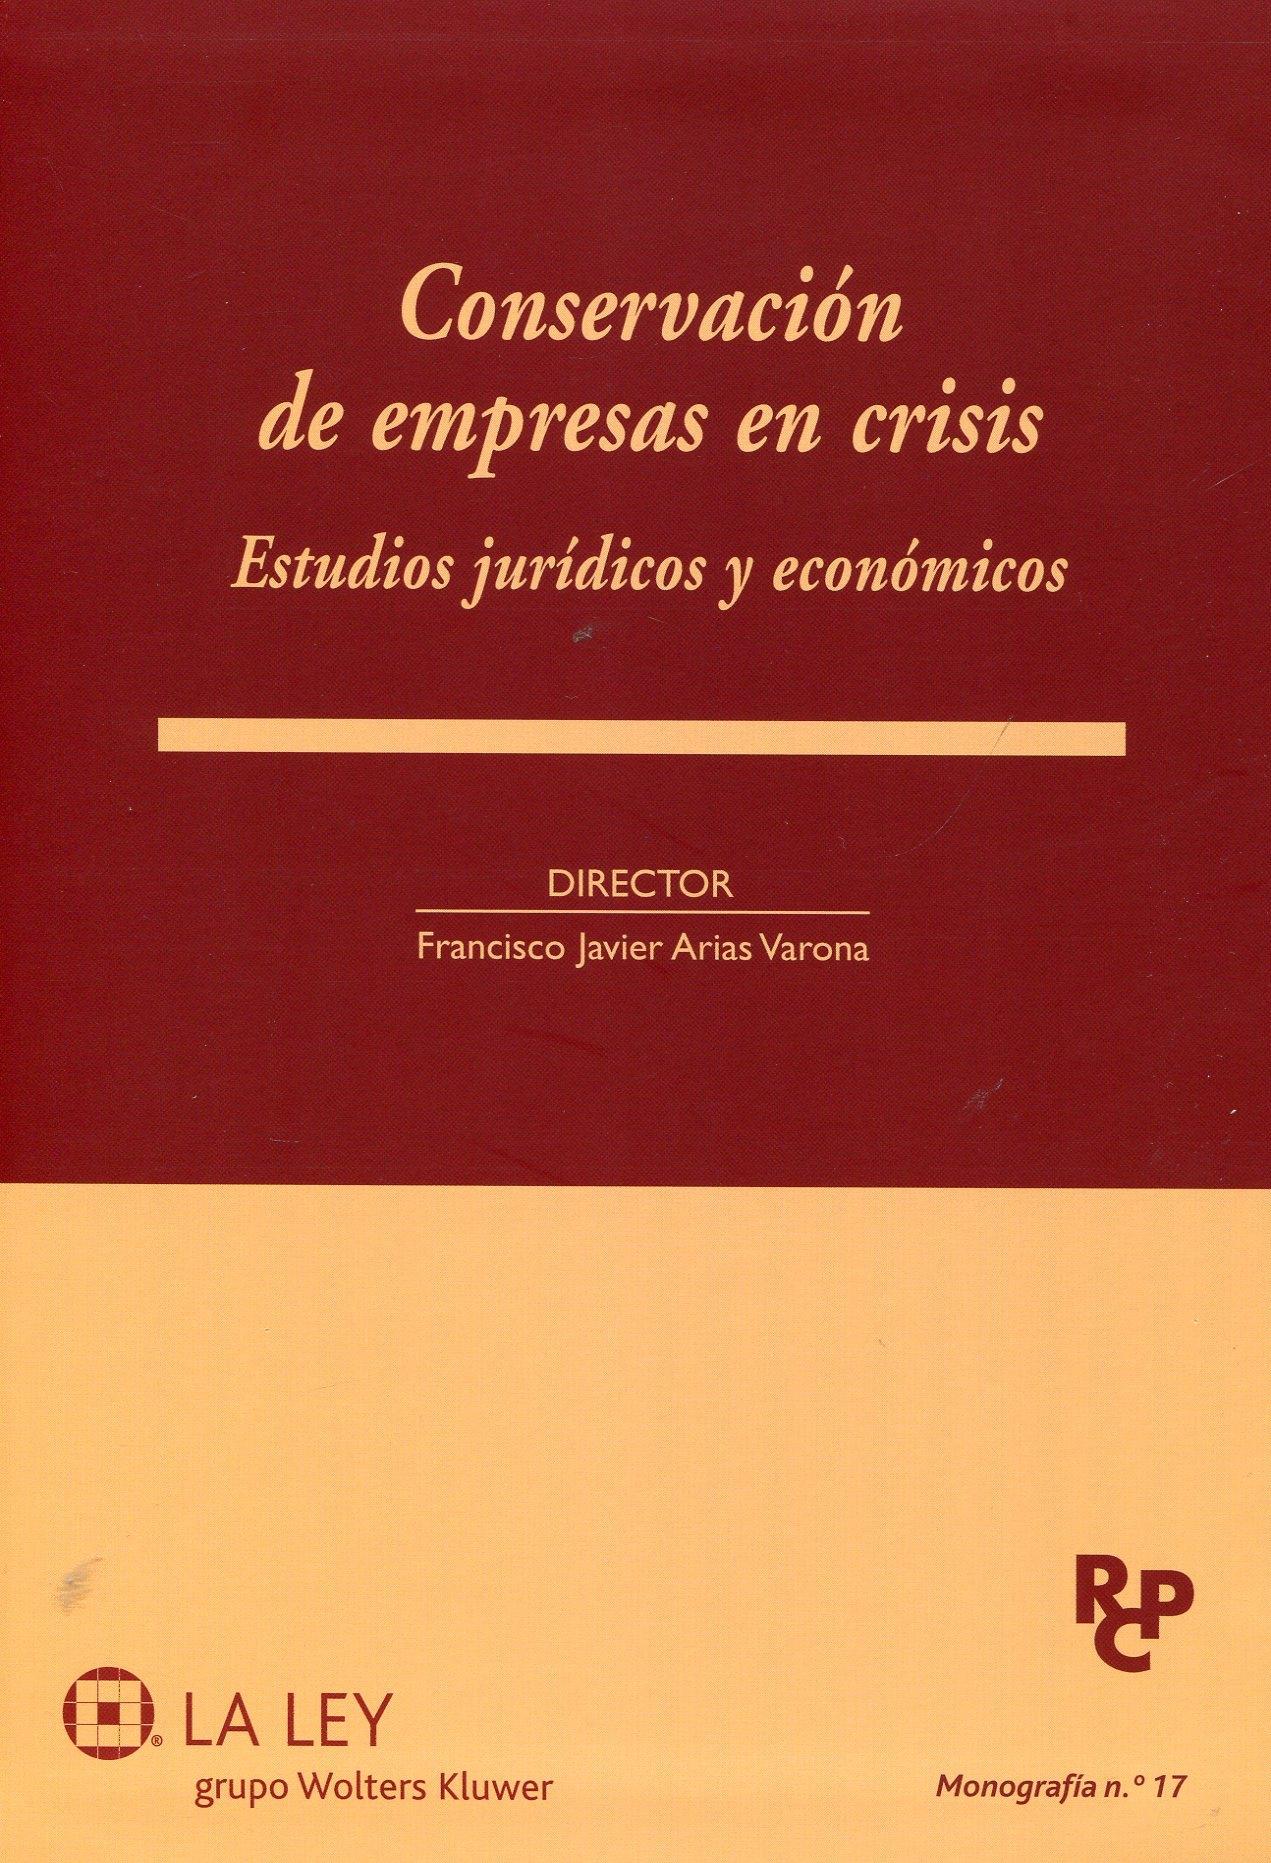 Conservación de empresas en crisis "Estudios jurídicos y económicos"